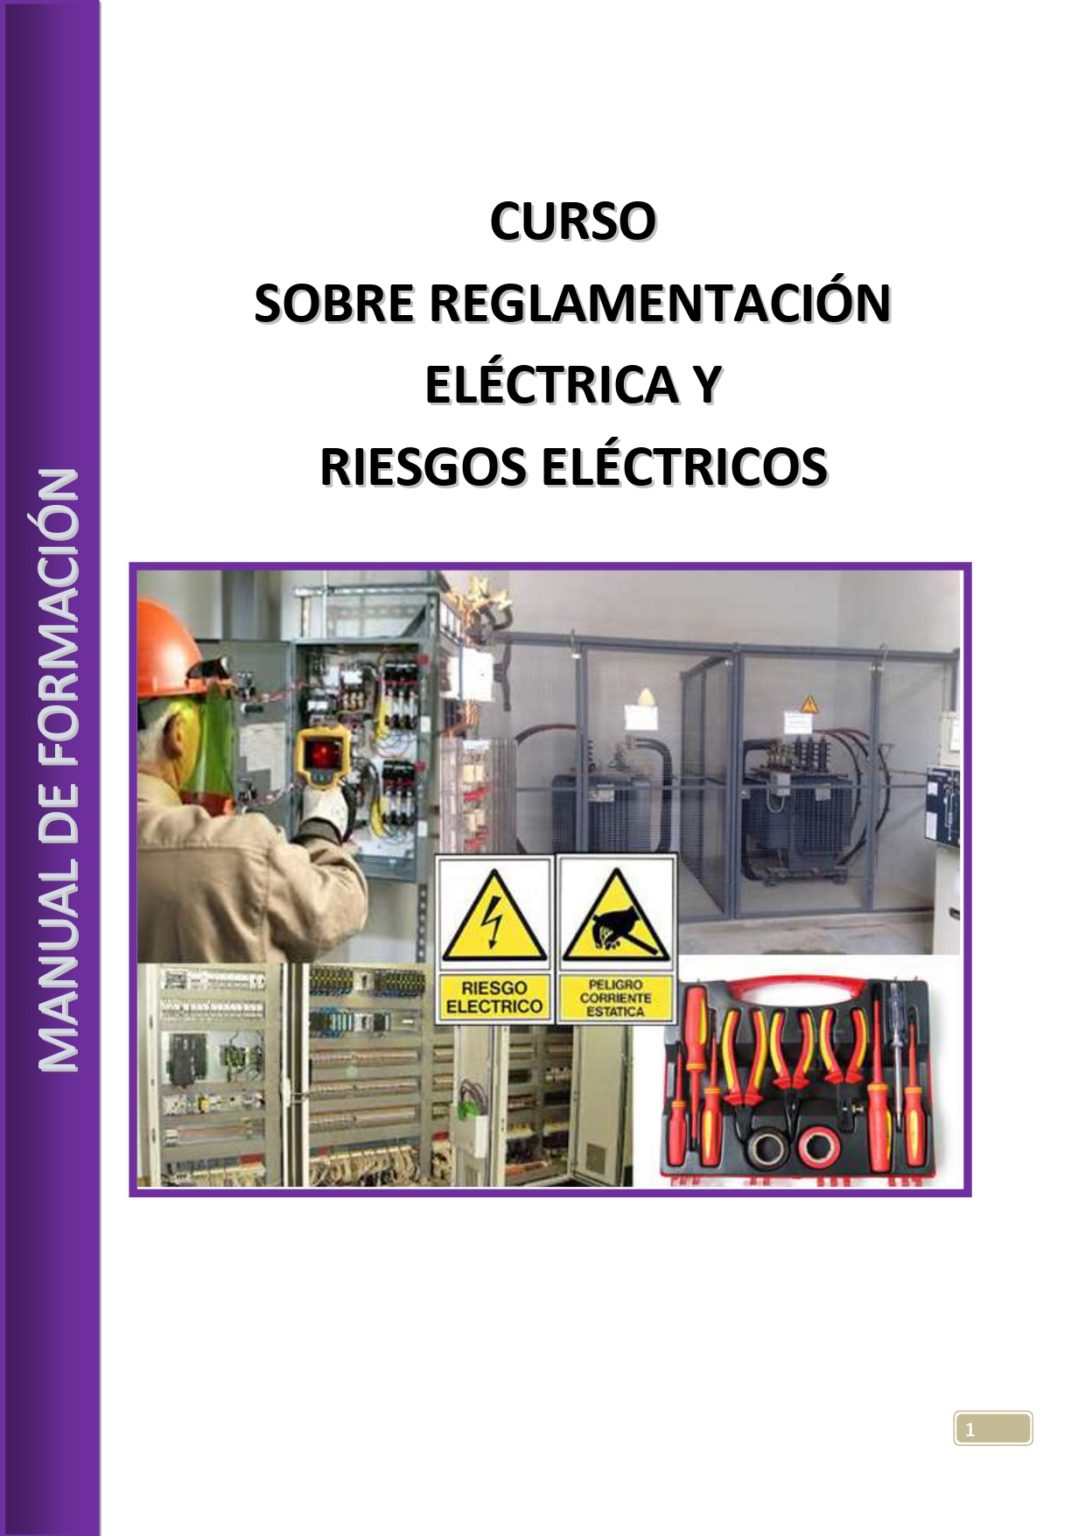 CURSO-SOBRE-REGLAMENTACION-ELECTRICA-Y-RIESGOS-ELECTRICOS_page-0001